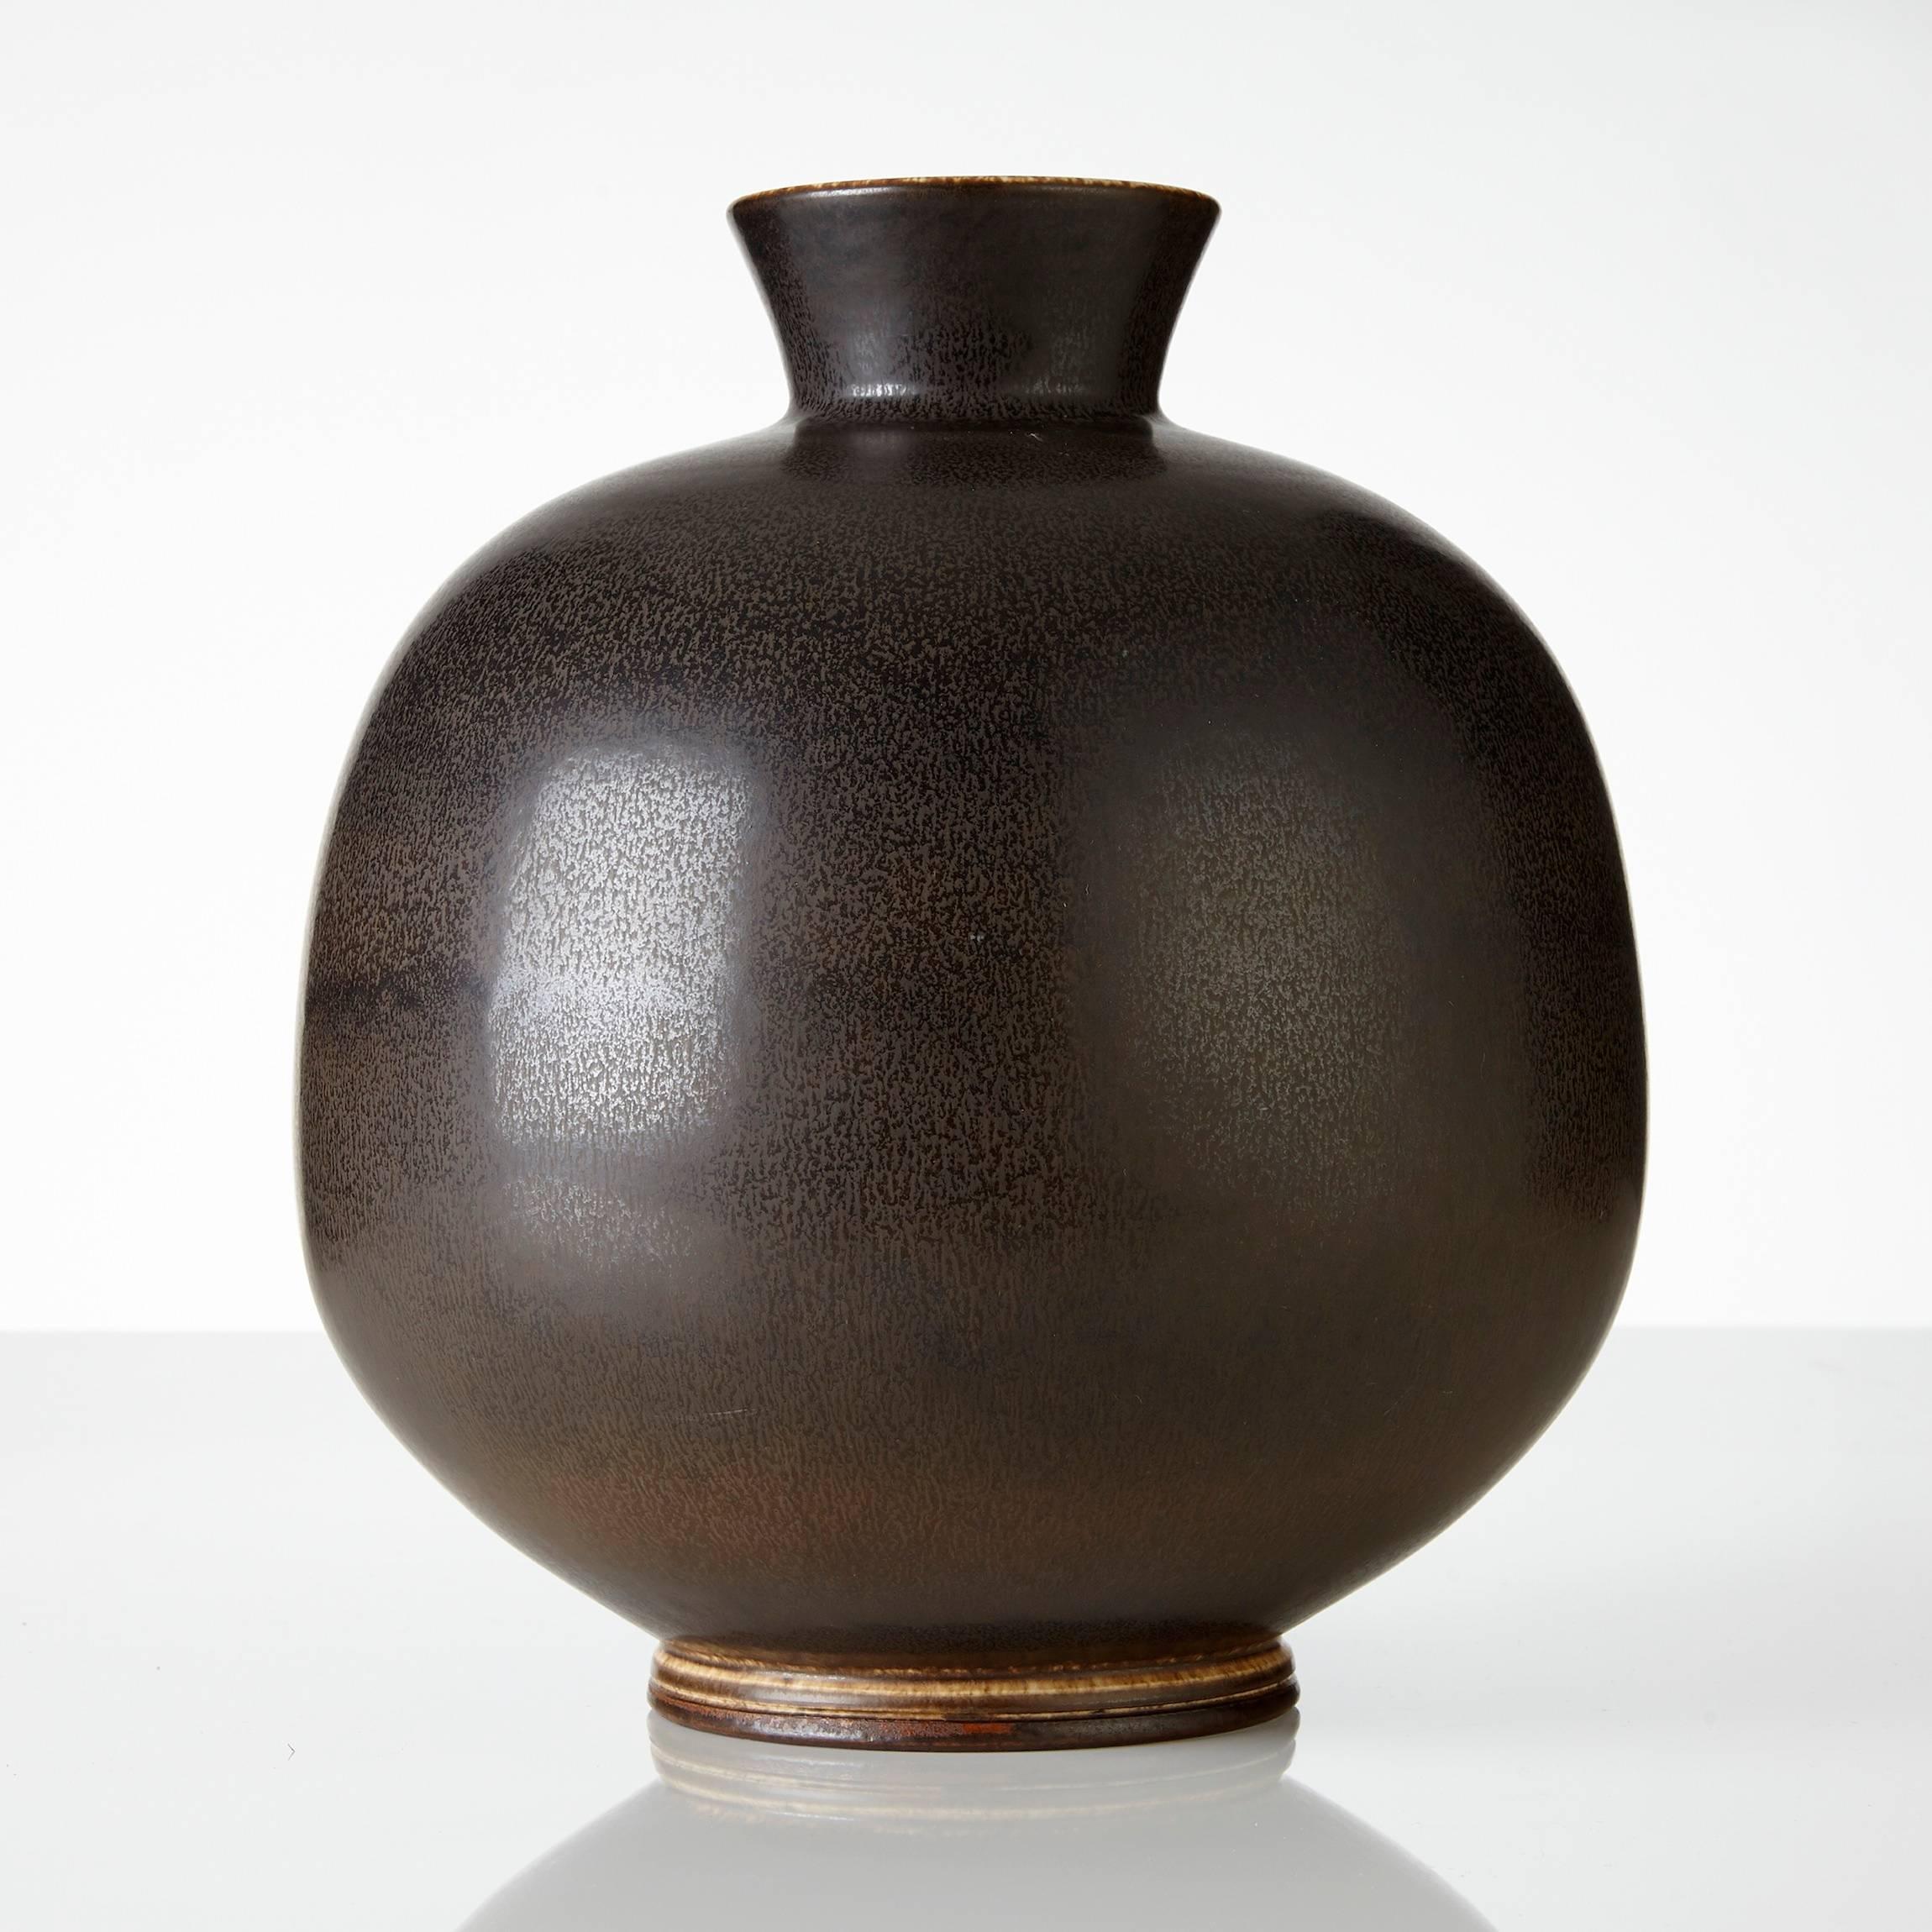 Berndt Friberg harefur glaze vase, different shades of brown, magnificent subtle colors. Stoneware signed Friberg Gustavsberg, 1979. Measure: Height 27 cm. Signed original.